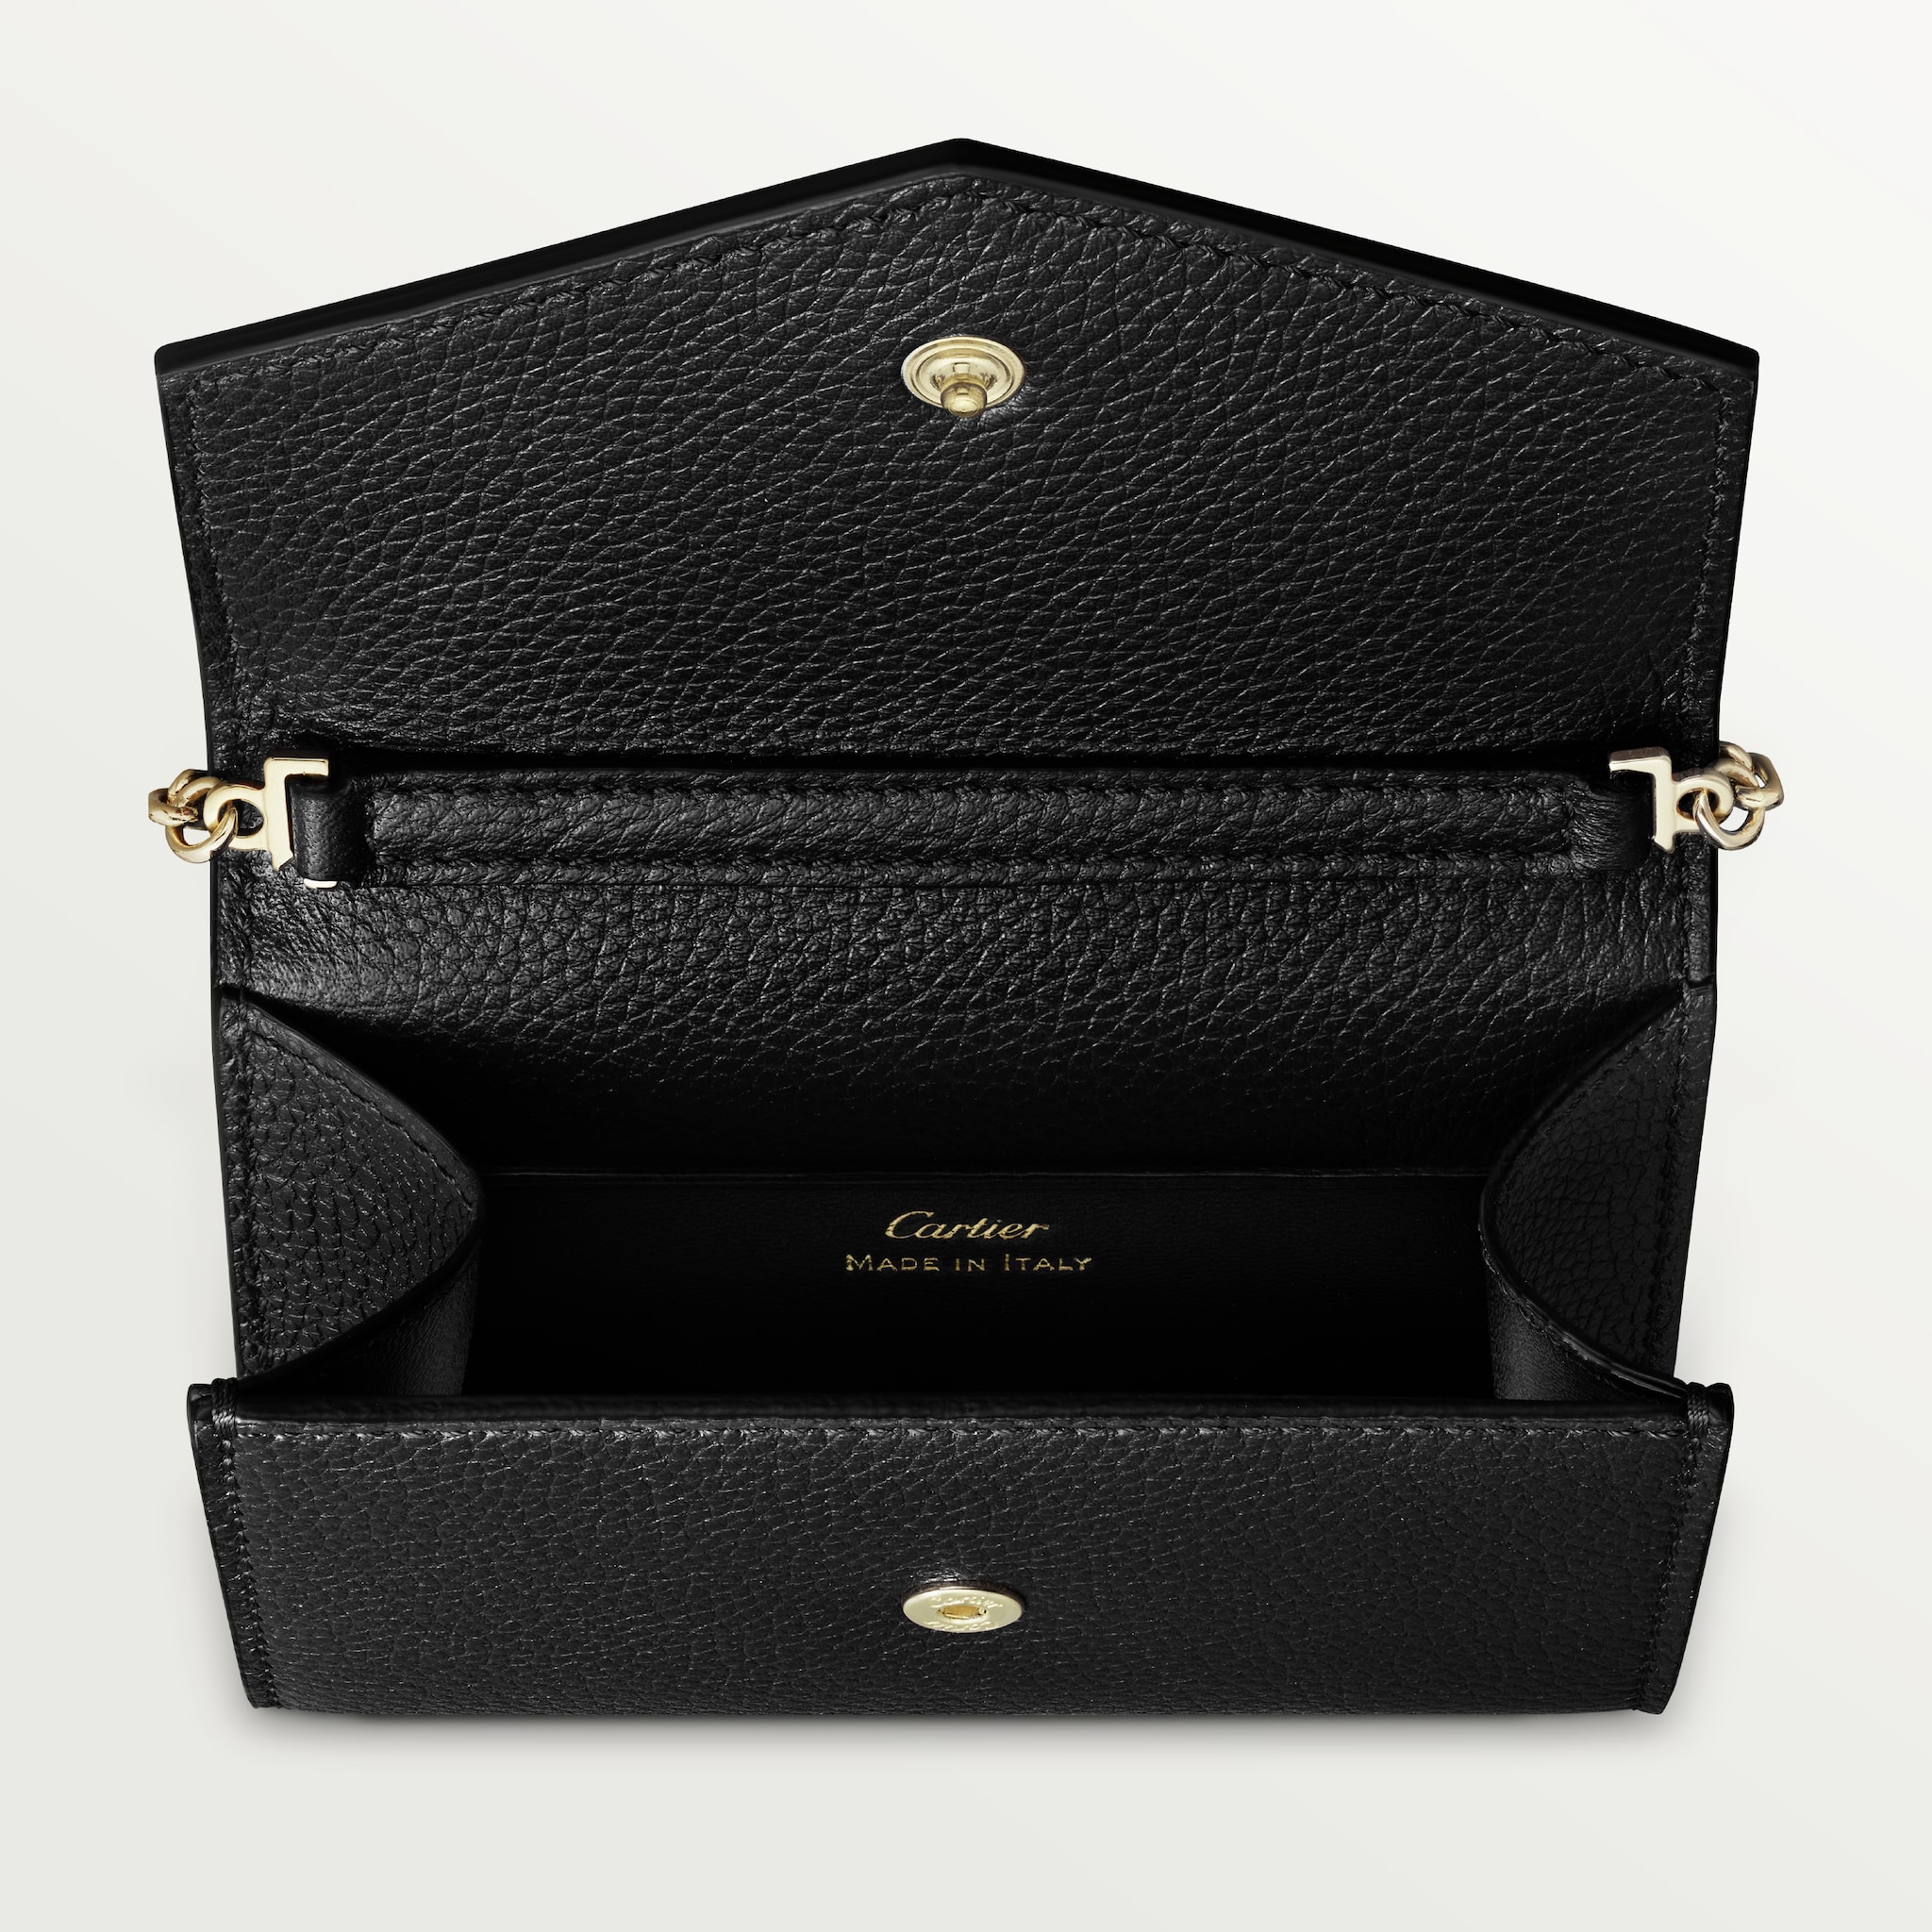 Panthère de Cartier Small Leather Goods, Wallet bagBlack calfskin, golden finish